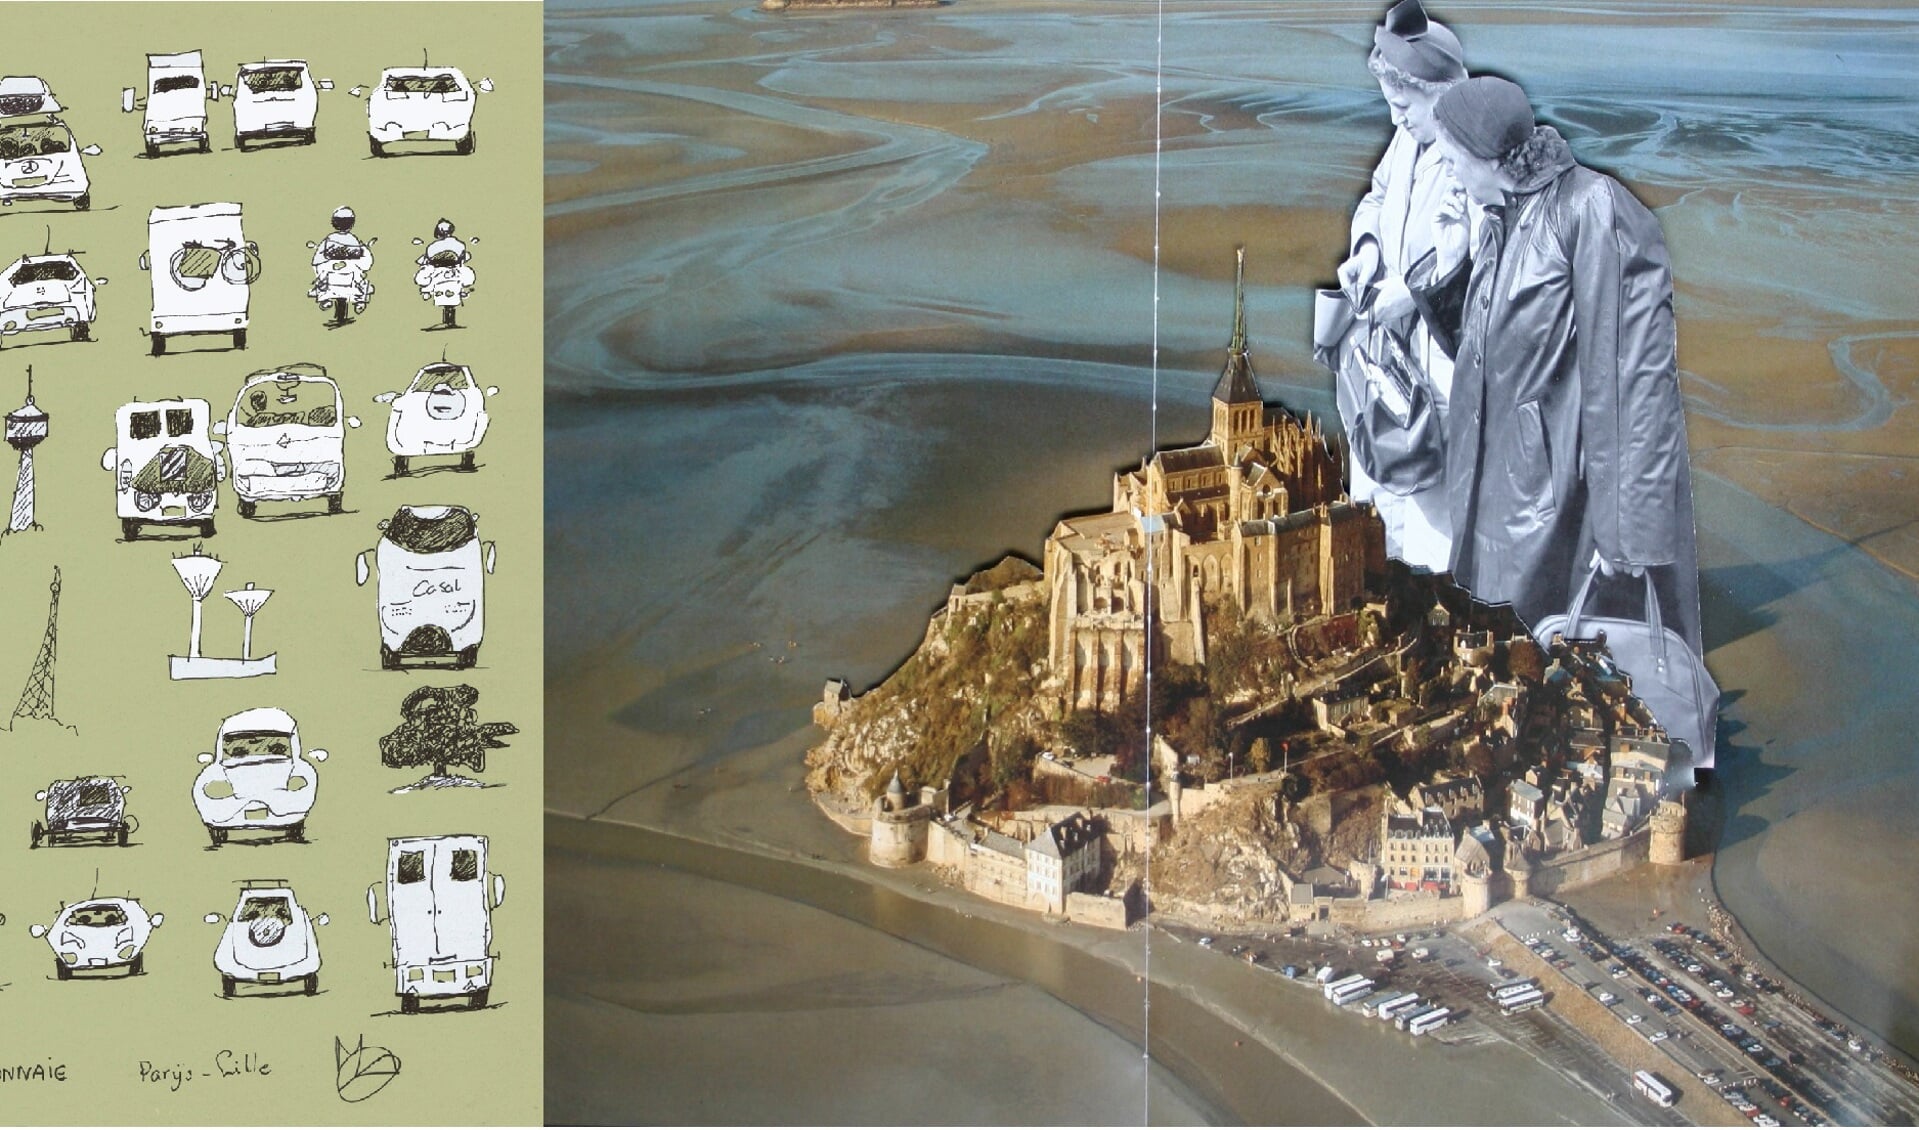 Links: pentekening 'Monnaie-Parijs Lille' van Monique Louter Cedée. Rechts: 3D-collage 'Bargain property ' van Sophidavich.